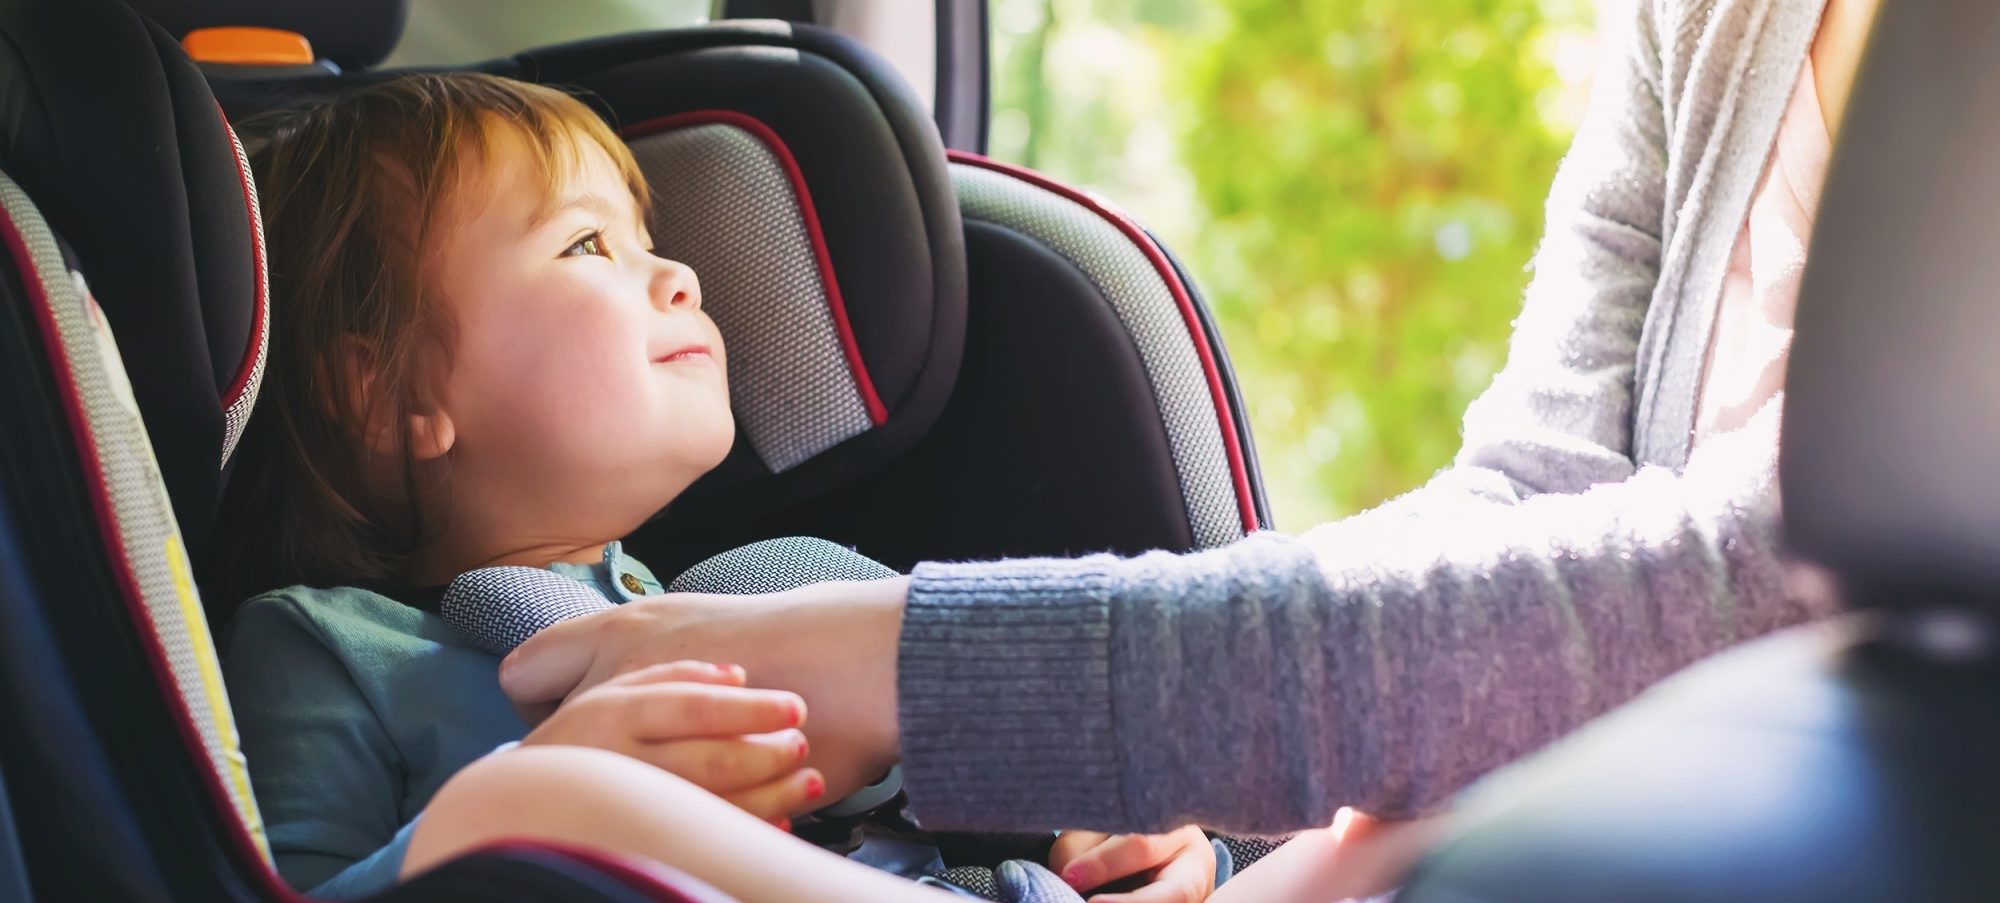 easyjet child car seat